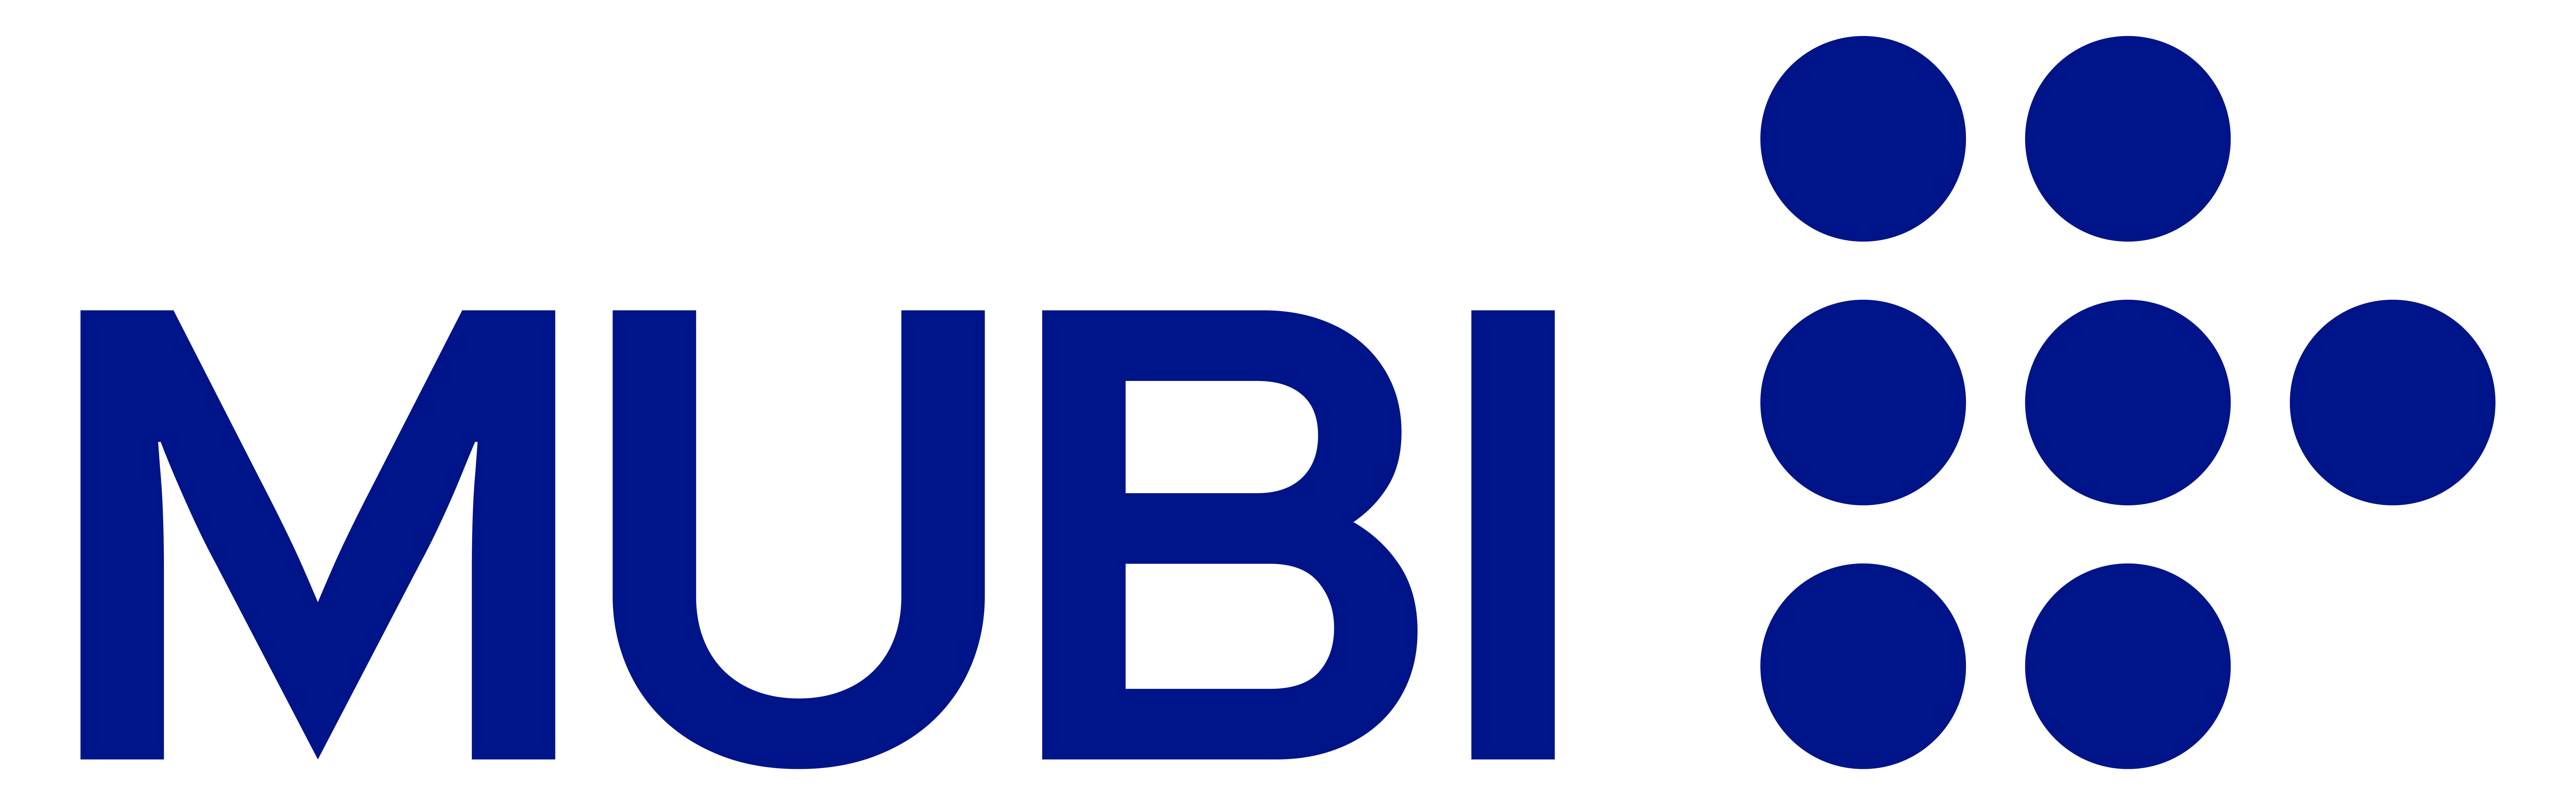 MUBI logo in blue.